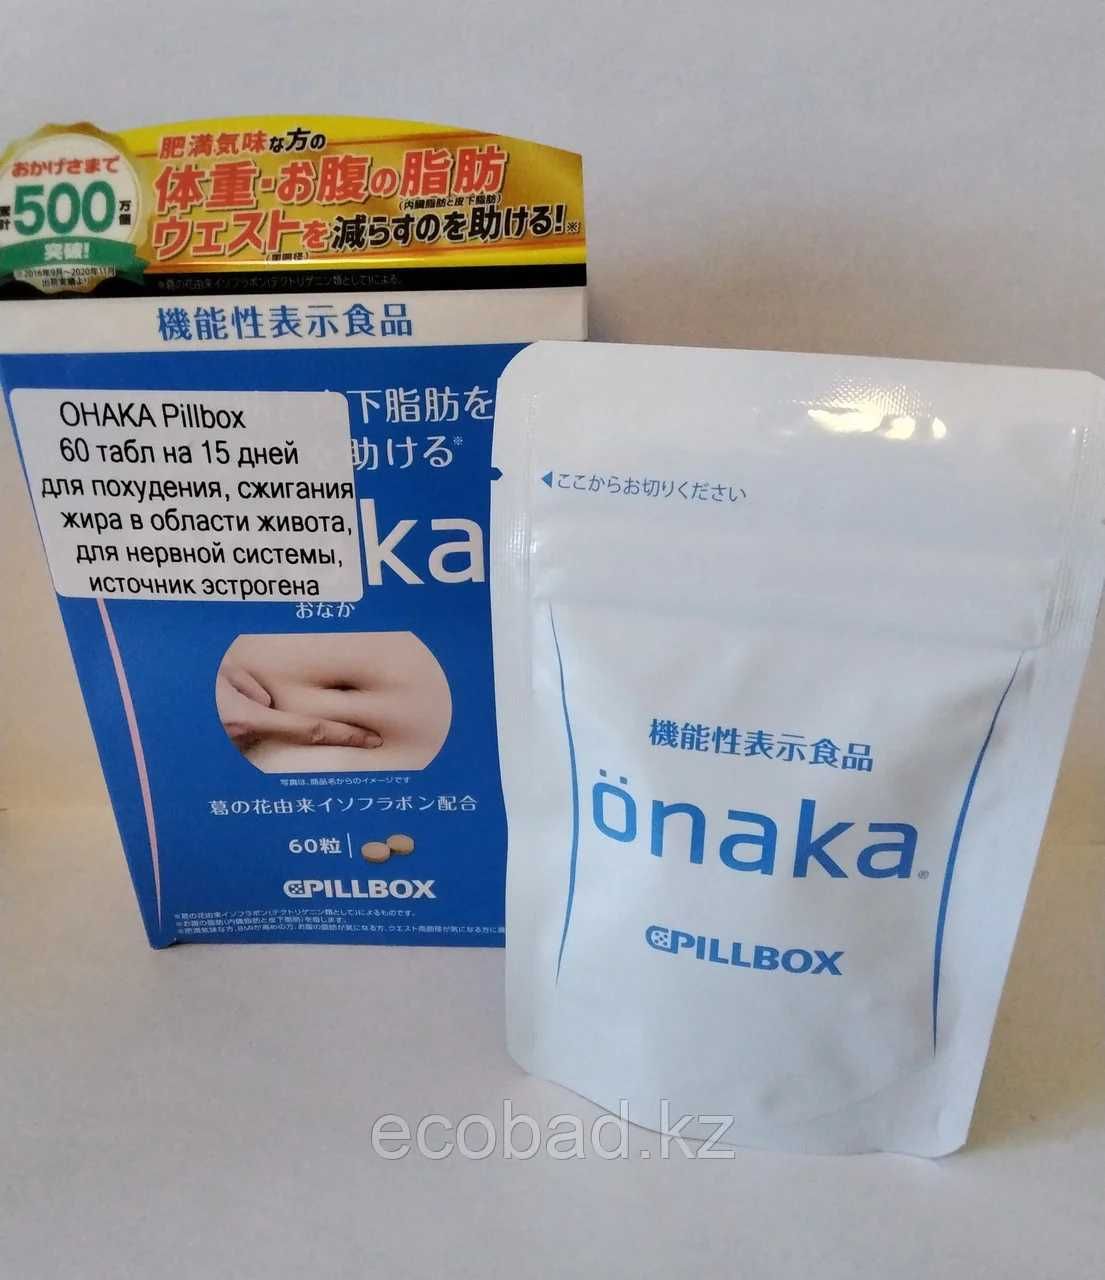 Онака для сжигания висцерального жира ONAKA Pillbox 60 таб. на 15 дней